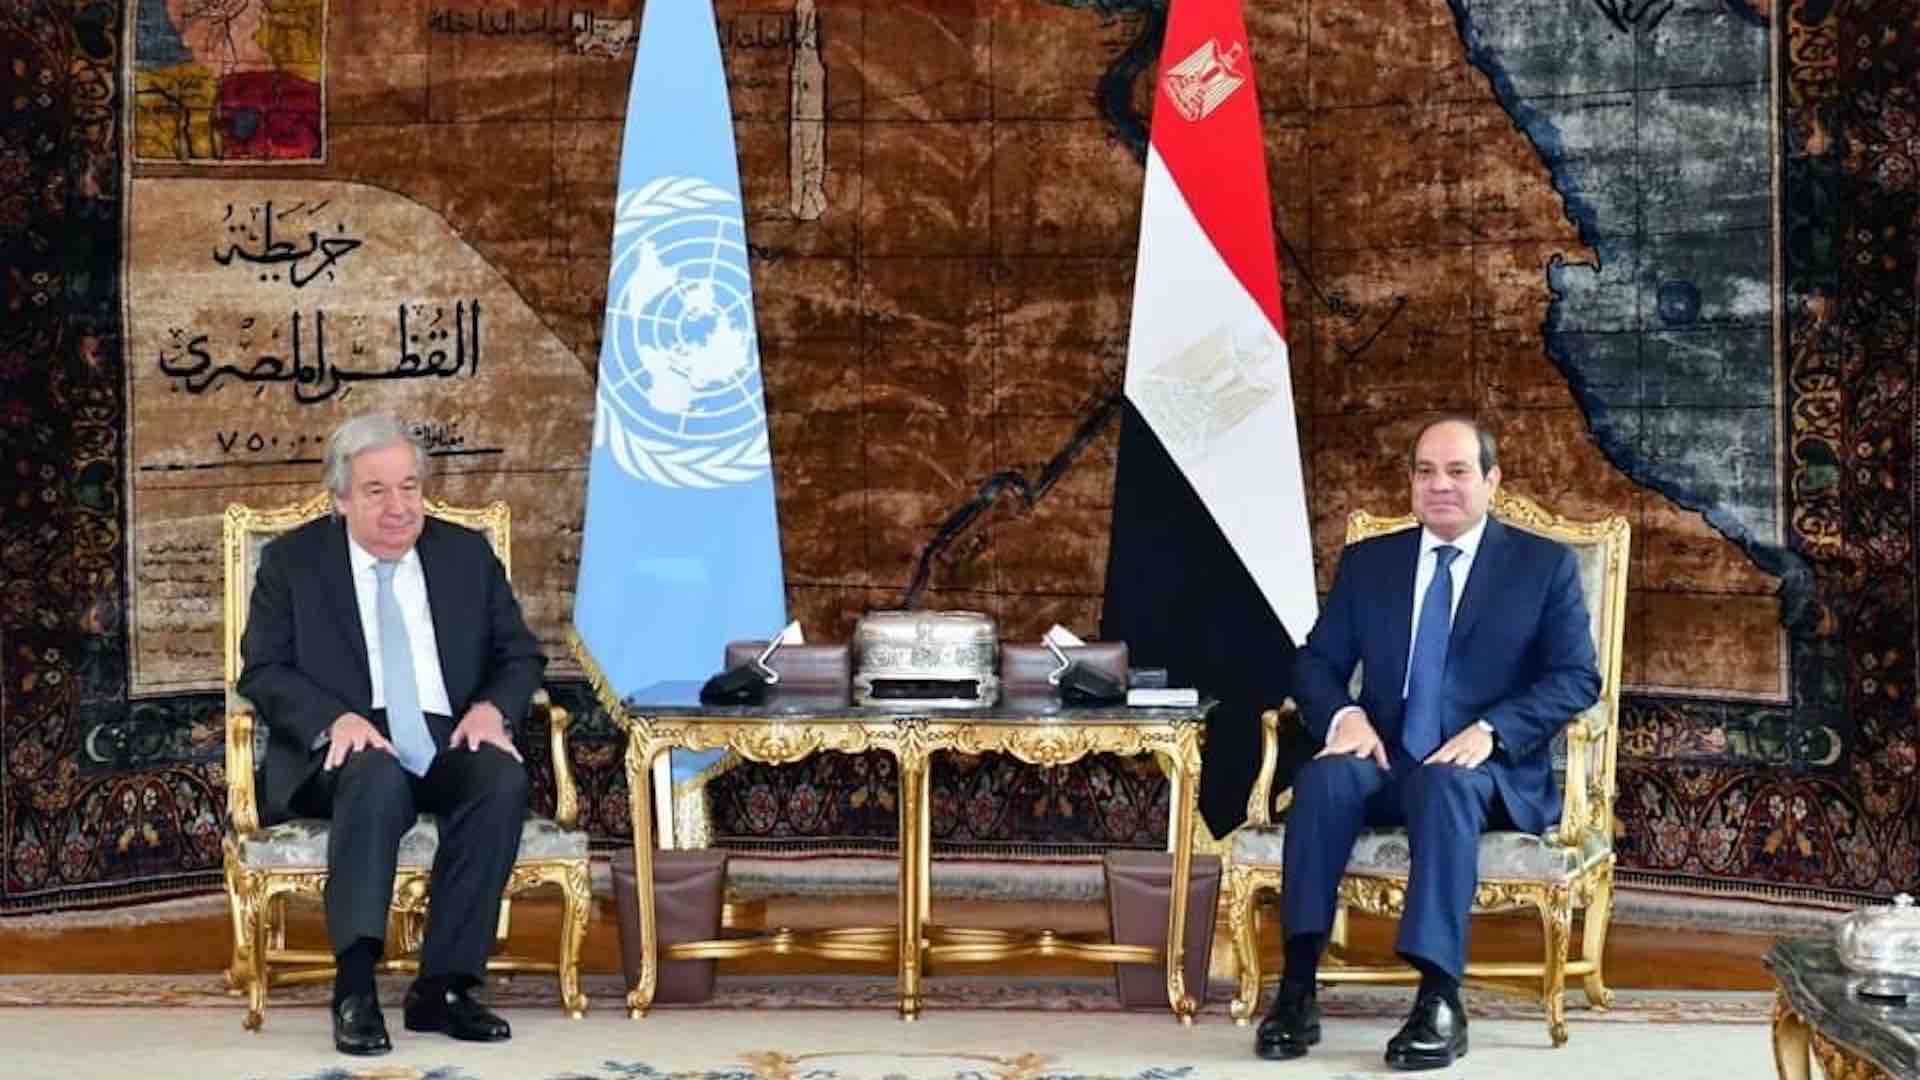 मिस्र के राष्ट्रपति अब्देल फत्ताह अल-सिसी और संयुक्त राष्ट्र महासचिव एंटोनियो गुटेरेस ने महत्वपूर्ण क्षेत्रीय और अंतर्राष्ट्रीय घटनाक्रमों से संबंधित एक महत्वपूर्ण चर्चा की, जिसमें गाजा पट्टी में हाल ही में घटित घटनाओं पर विशेष जोर दिया गया। काहिरा में आयोजित बैठक में चल रहे संकट से संबंधित महत्वपूर्ण मामलों पर गहन चर्चा की गई। राष्ट्रपति सिसी ने बढ़ती स्थिति को संबोधित करने में संयुक्त राष्ट्र सुरक्षा परिषद की जिम्मेदारी को रेखांकित किया, कुछ देशों द्वारा फिलिस्तीन शरणार्थियों के लिए संयुक्त राष्ट्र राहत और कार्य एजेंसी (यूएनआरडब्ल्यूए) के लिए समर्थन वापस लेने पर गहरी चिंता व्यक्त की। उन्होंने इस तरह की कार्रवाइयों को "निर्दोष फिलिस्तीनियों की सामूहिक सजा" के समान बताया, उनकी दुर्दशा को कम करने के लिए सामूहिक प्रयास का आग्रह किया। तत्काल कार्रवाई के लिए रणनीतियों की रूपरेखा तैयार करते हुए, राष्ट्रपति सिसी ने युद्धविराम की तत्काल आवश्यकता, बंदियों के आदान-प्रदान की सुविधा और गाजा में लोगों की पीड़ा को कम करने के लिए मानवीय सहायता के त्वरित वितरण पर प्रकाश डाला। उन्होंने भूमि मार्गों के माध्यम से सहायता के प्रभावी वितरण को सुनिश्चित करने के लिए प्रासंगिक संयुक्त राष्ट्र एजेंसियों के साथ समन्वय के महत्व पर जोर दिया, साथ ही हवाई ड्रॉप की व्यवहार्यता पर भी विचार किया, विशेष रूप से गाजा के उत्तरी क्षेत्रों में जहां पहुंच गंभीर रूप से प्रतिबंधित है। दोनों नेताओं ने स्थिति की गंभीरता को स्वीकार किया और इसे और अधिक बढ़ने से रोकने के महत्वपूर्ण महत्व पर बल दिया। उन्होंने फिलिस्तीनियों को विस्थापित करने के प्रयासों को दृढ़ता से खारिज कर दिया और फिलिस्तीनी राफा में सैन्य अभियानों के खिलाफ चेतावनी दी, जिससे गंभीर मानवीय संकट पर संभावित विनाशकारी परिणाम सामने आ सकते हैं। राष्ट्रपति सिसी और महासचिव गुटेरेस के बीच बैठक गाजा पट्टी संकट को संबोधित करने के लिए अंतर्राष्ट्रीय सहयोग की तत्काल आवश्यकता को रेखांकित करती है। जीवन दांव पर है और मानवीय स्थिति बिगड़ रही है, फिलिस्तीनी पीड़ा को कम करने और संघर्ष के स्थायी समाधान की दिशा में काम करने के लिए अंतर्राष्ट्रीय समुदाय की ओर से त्वरित और निर्णायक कार्रवाई अनिवार्य है।